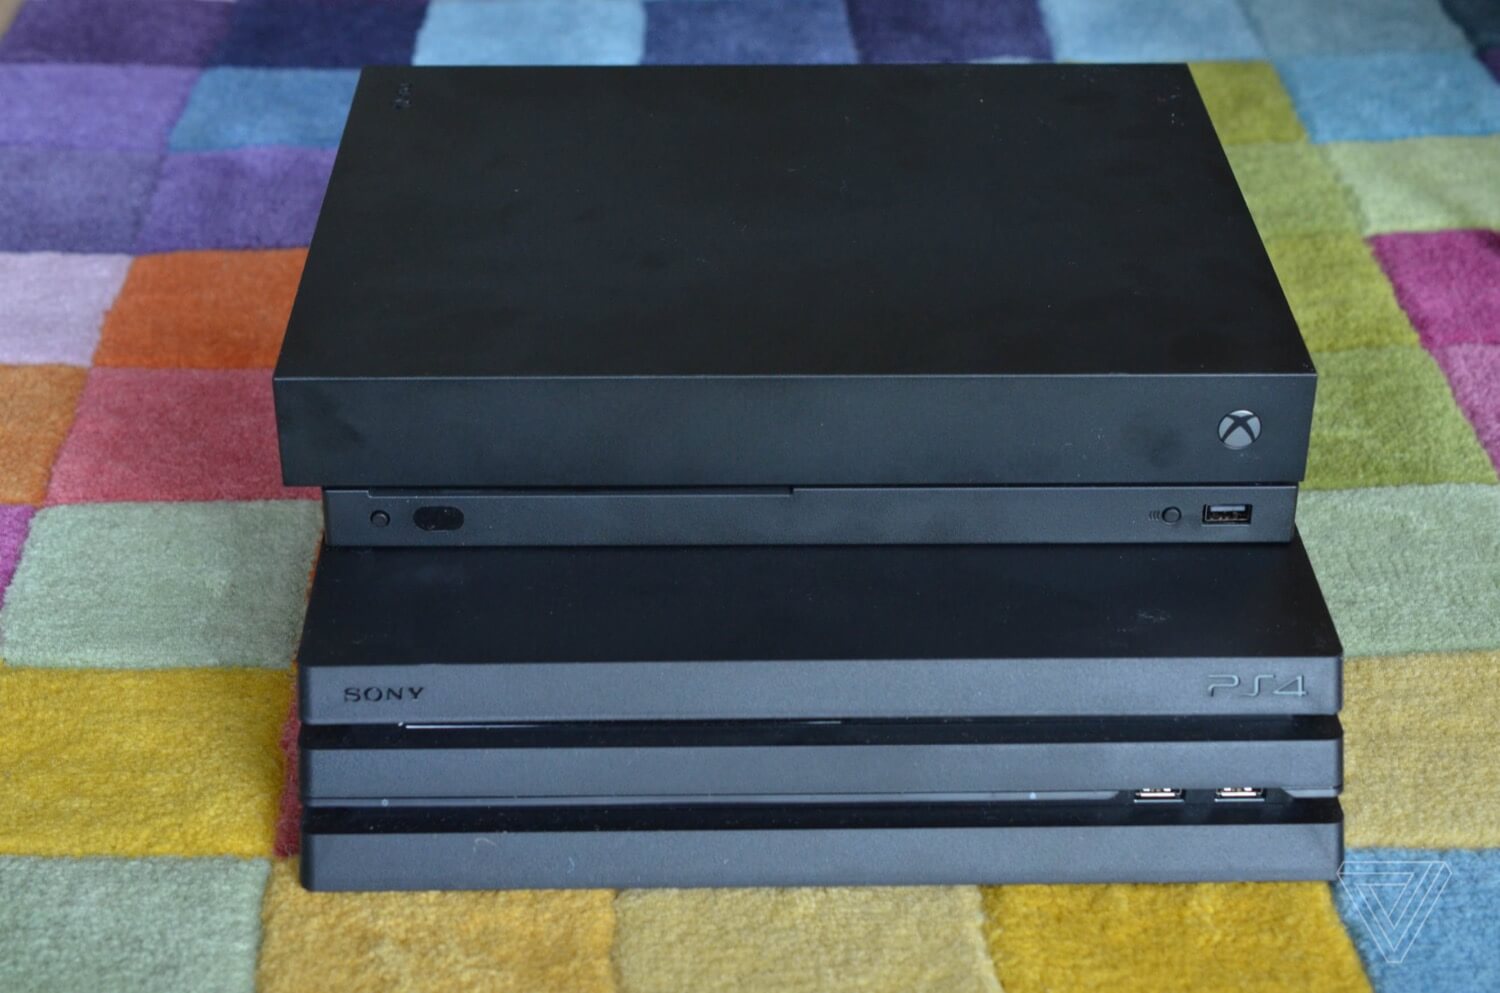 PlayStation 4 против Xbox One 5 лет спустя. Кто сделал правильный выбор